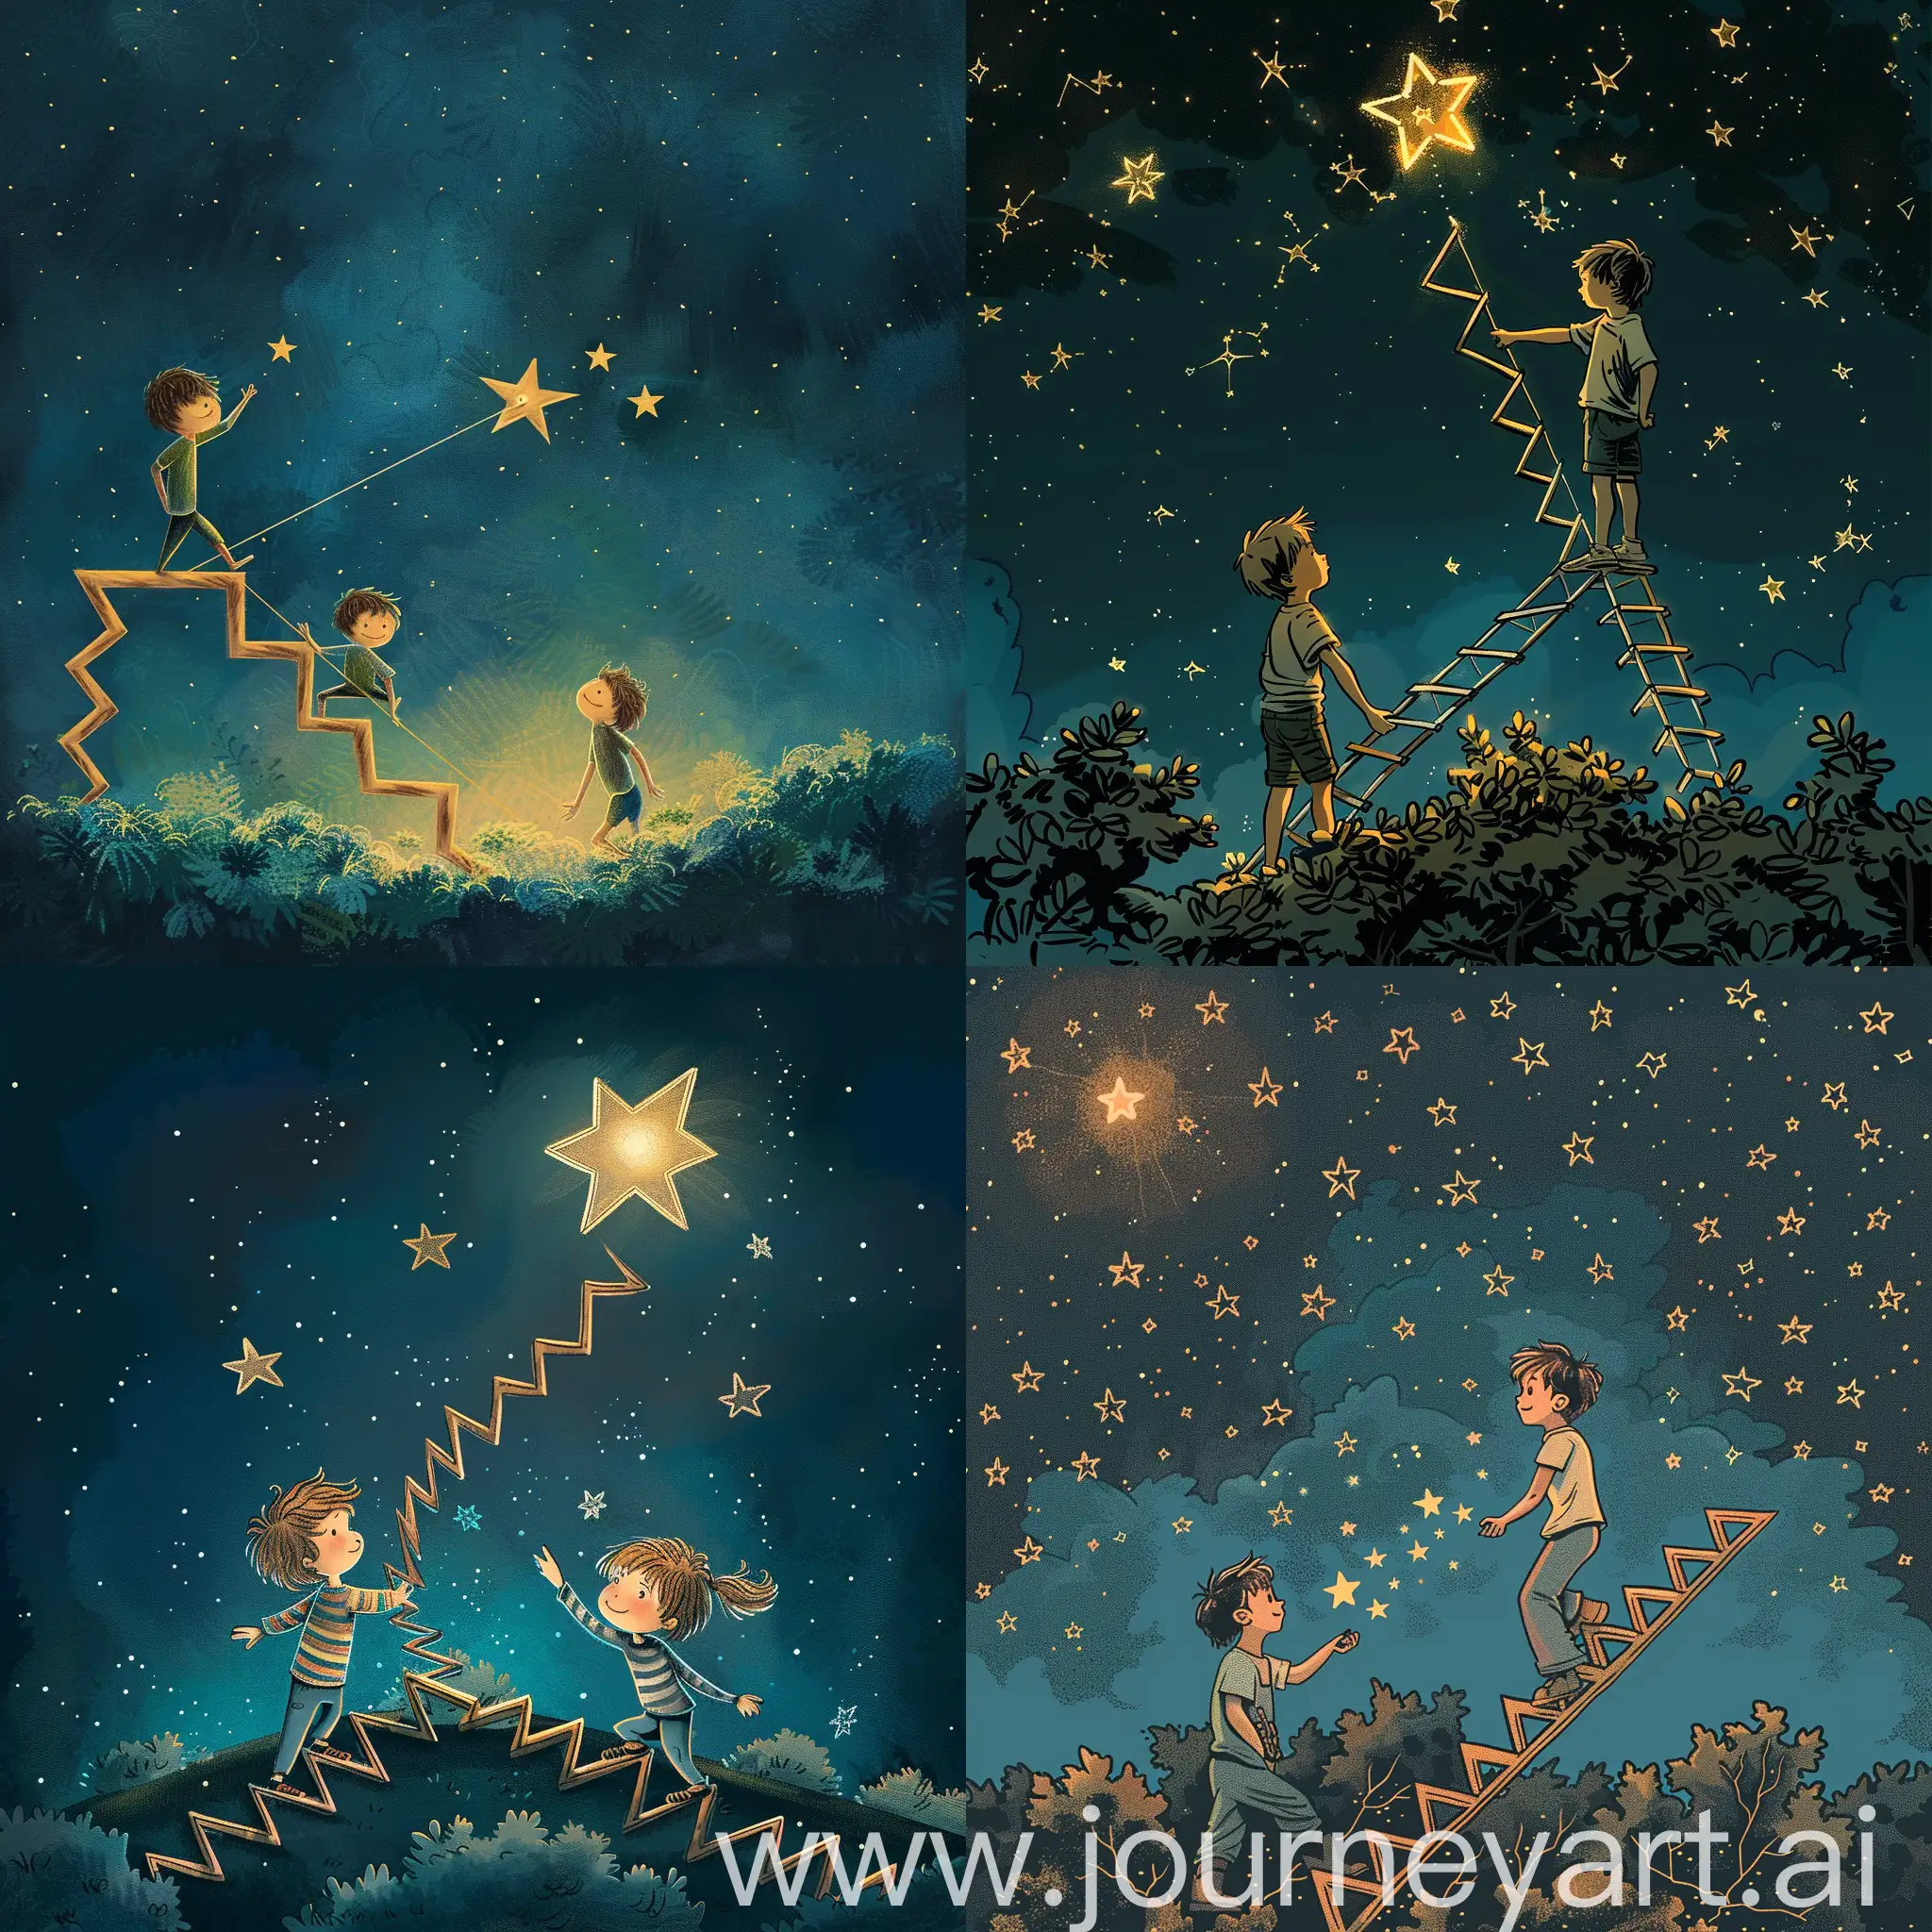 漫画场景，星光照耀，两个少年，一人踩在人字梯上摘星